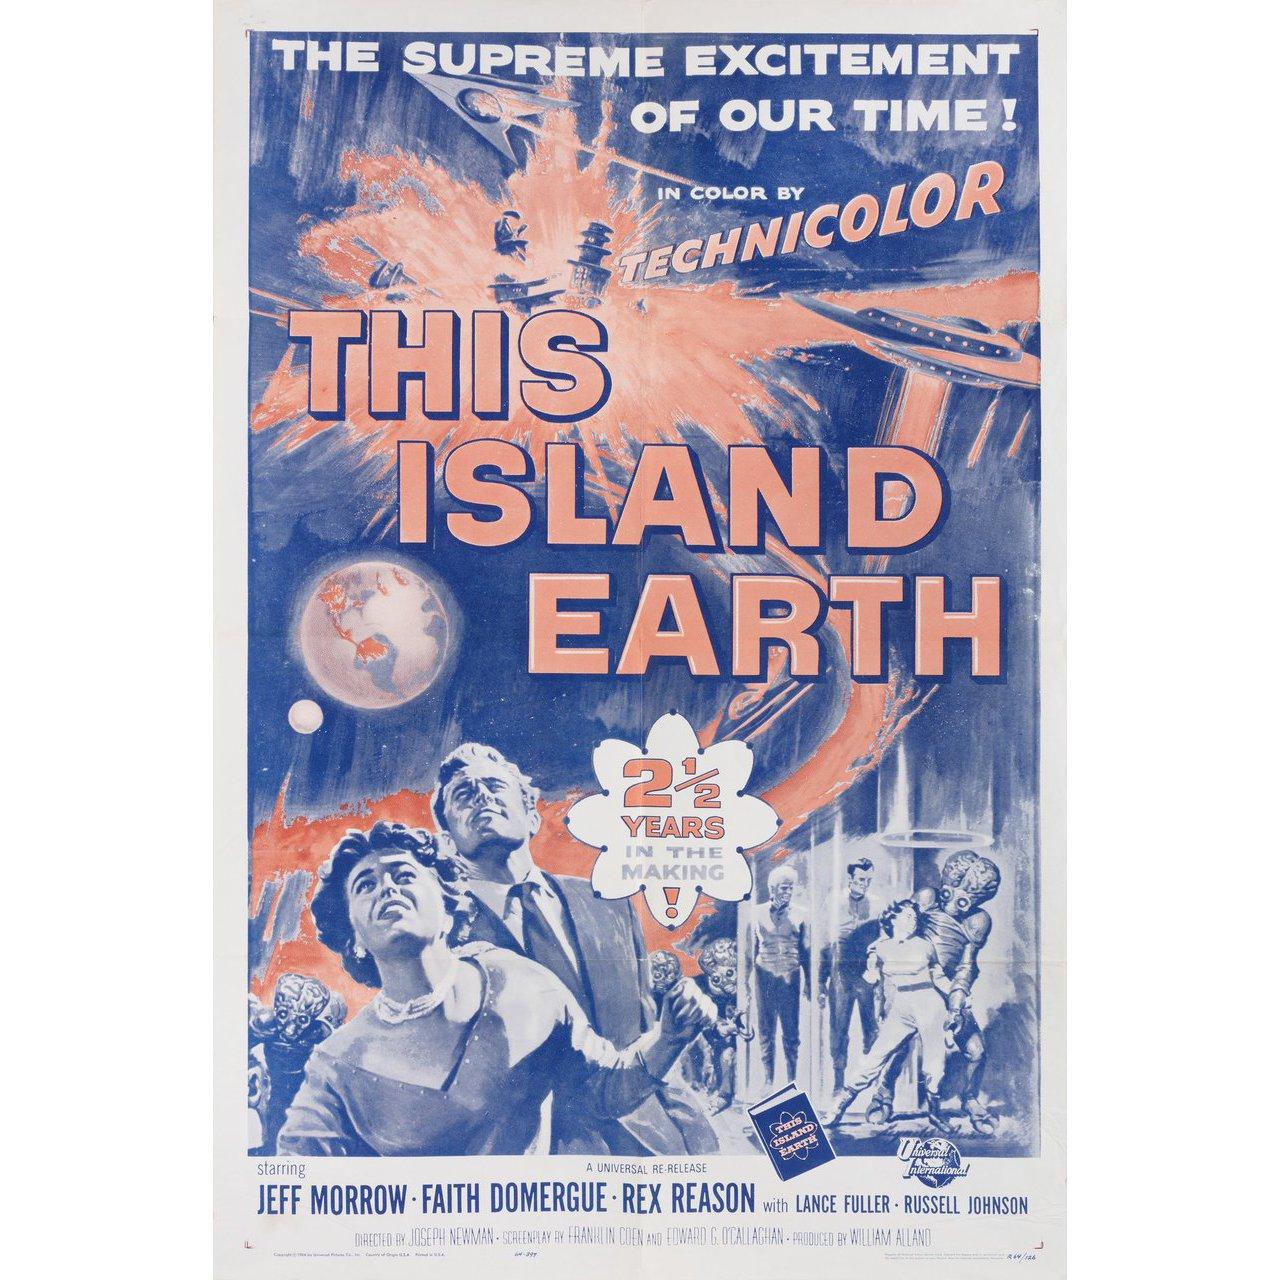 Affiche originale de la réédition américaine de 1964 du film This Island Earth réalisé par Joseph M. Newman / Jack Arnold en 1955 avec Jeff Morrow / Faith Domergue / Rex Reason / Lance Fuller. Très bon état, plié avec des plis en bas. De nombreuses